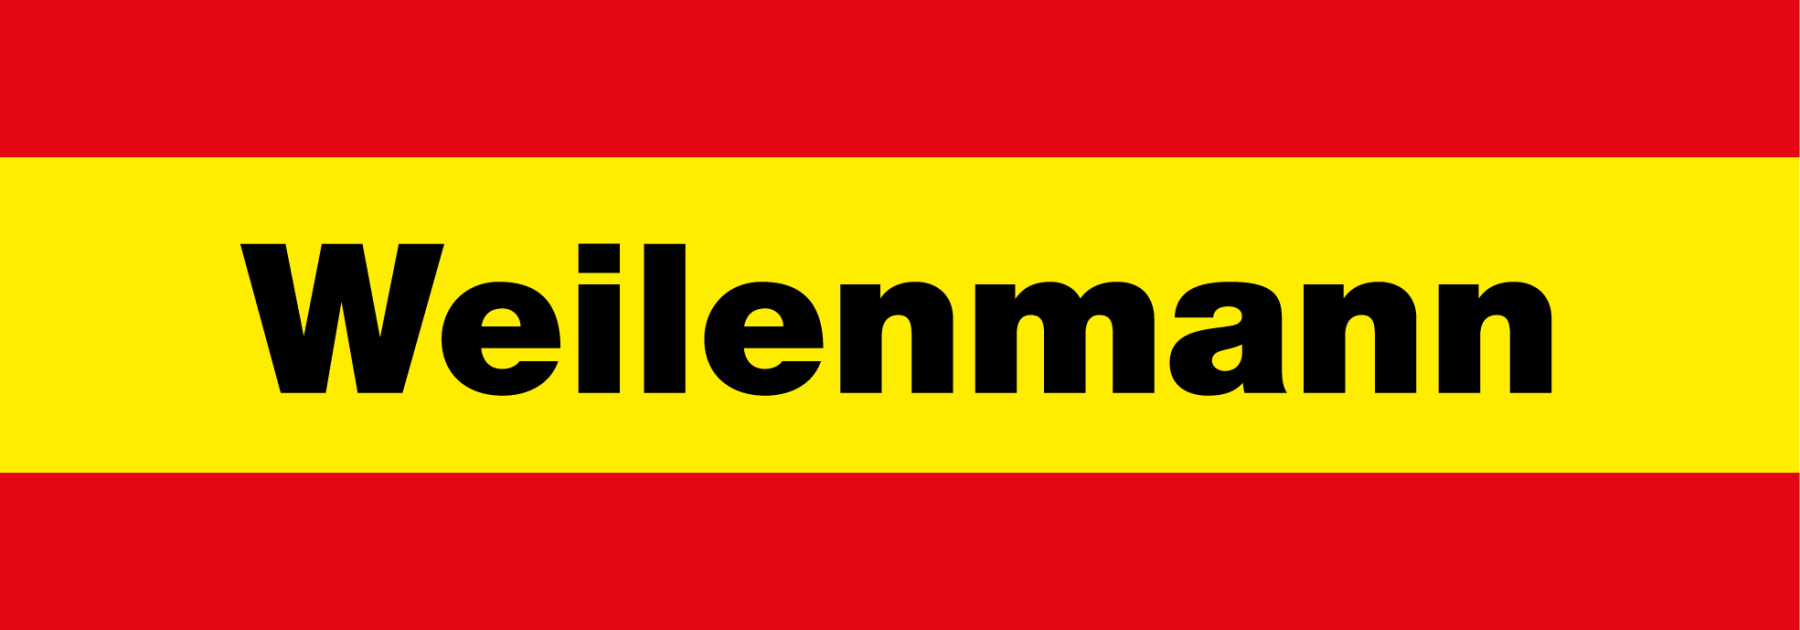 Weilenmann_Logo-01